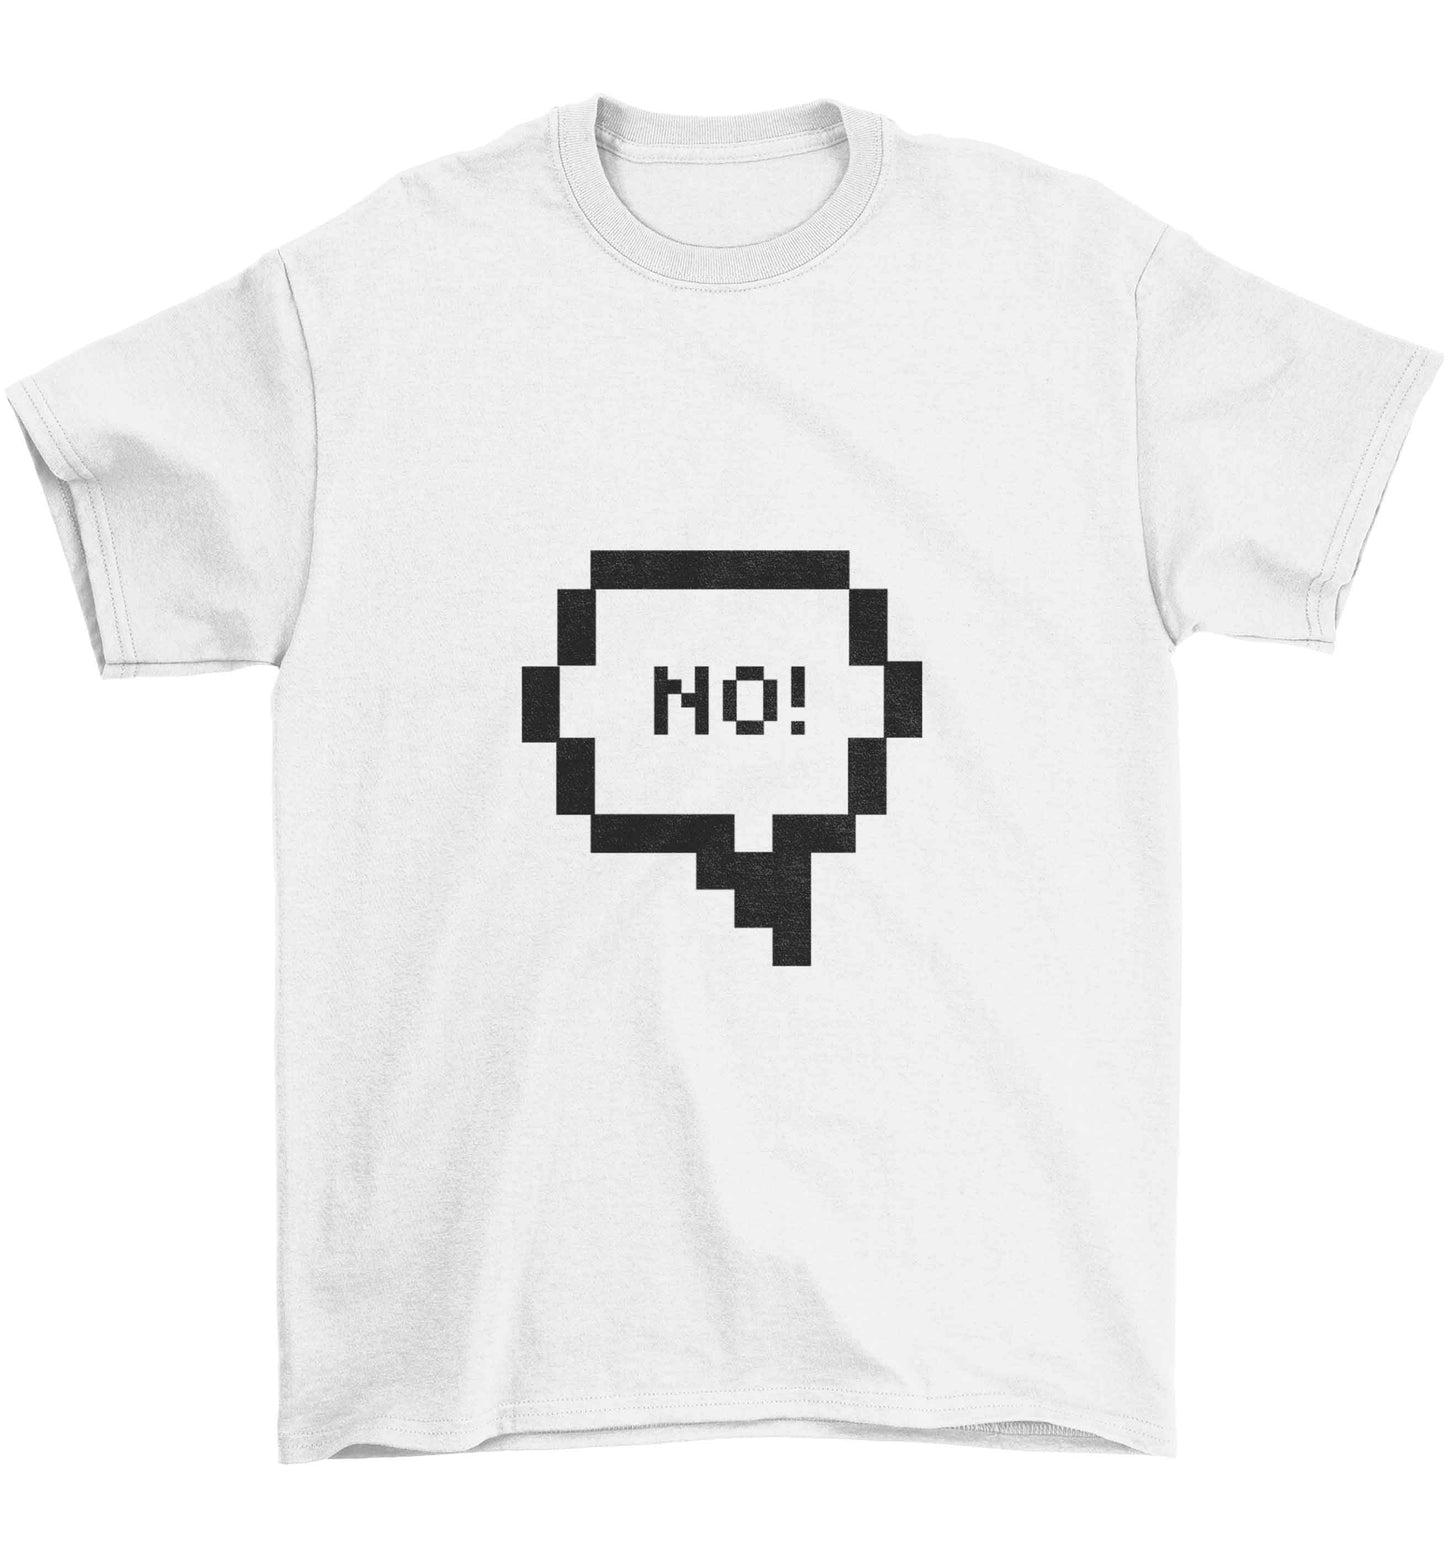 No Children's white Tshirt 12-13 Years